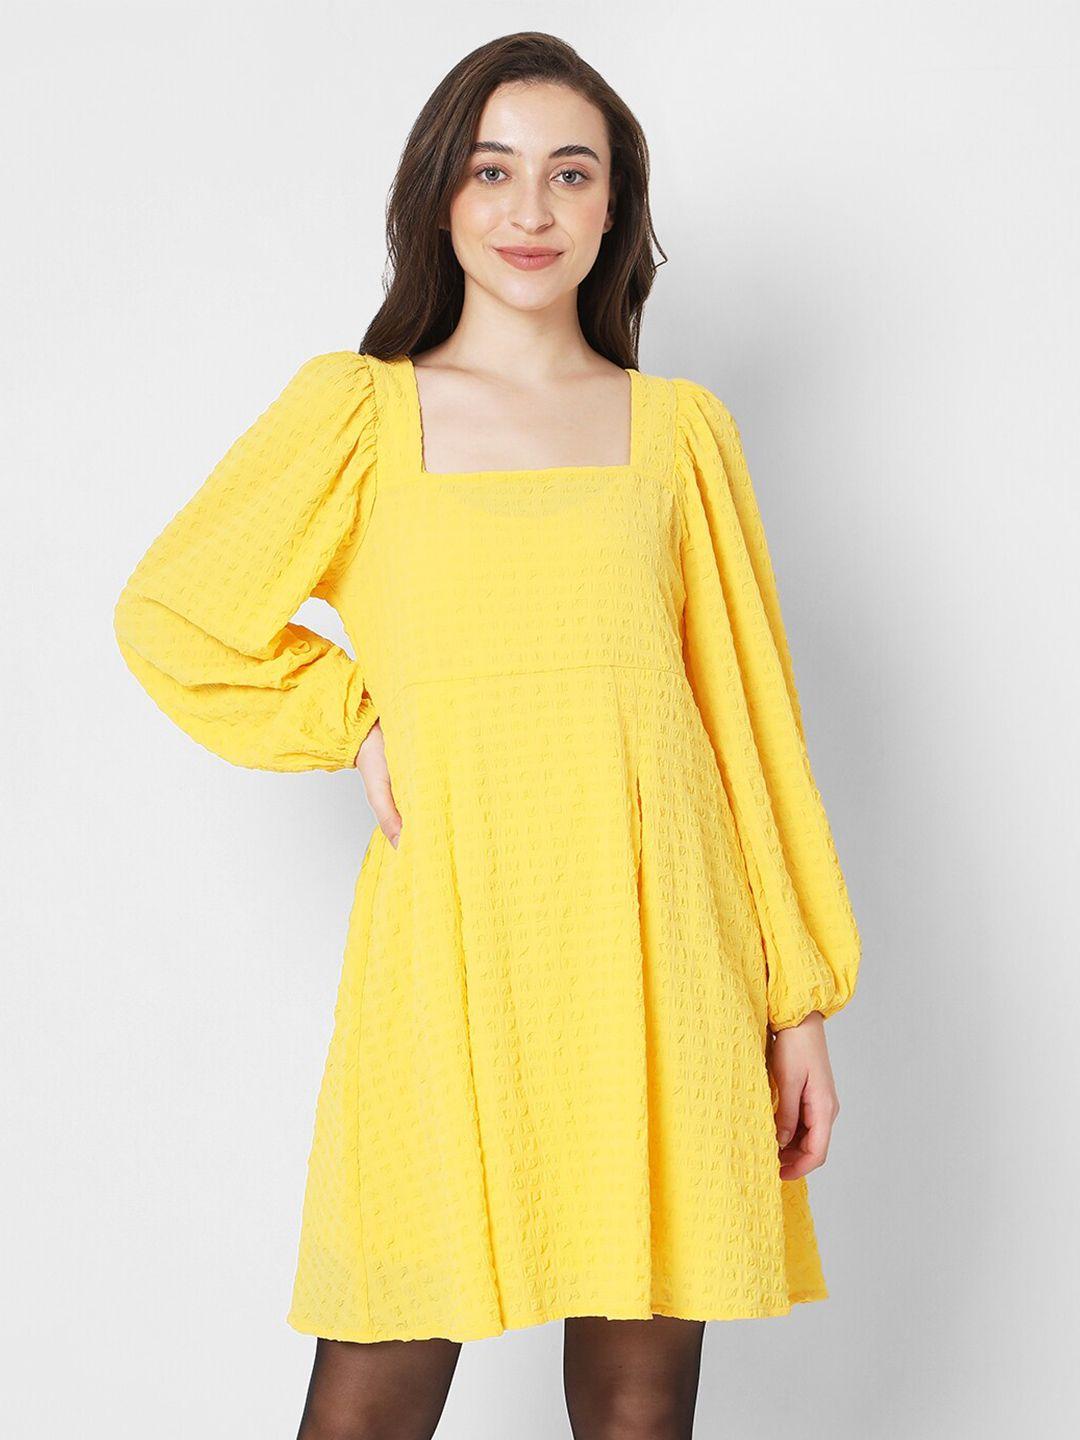 vero moda yellow self design fit & flare dress